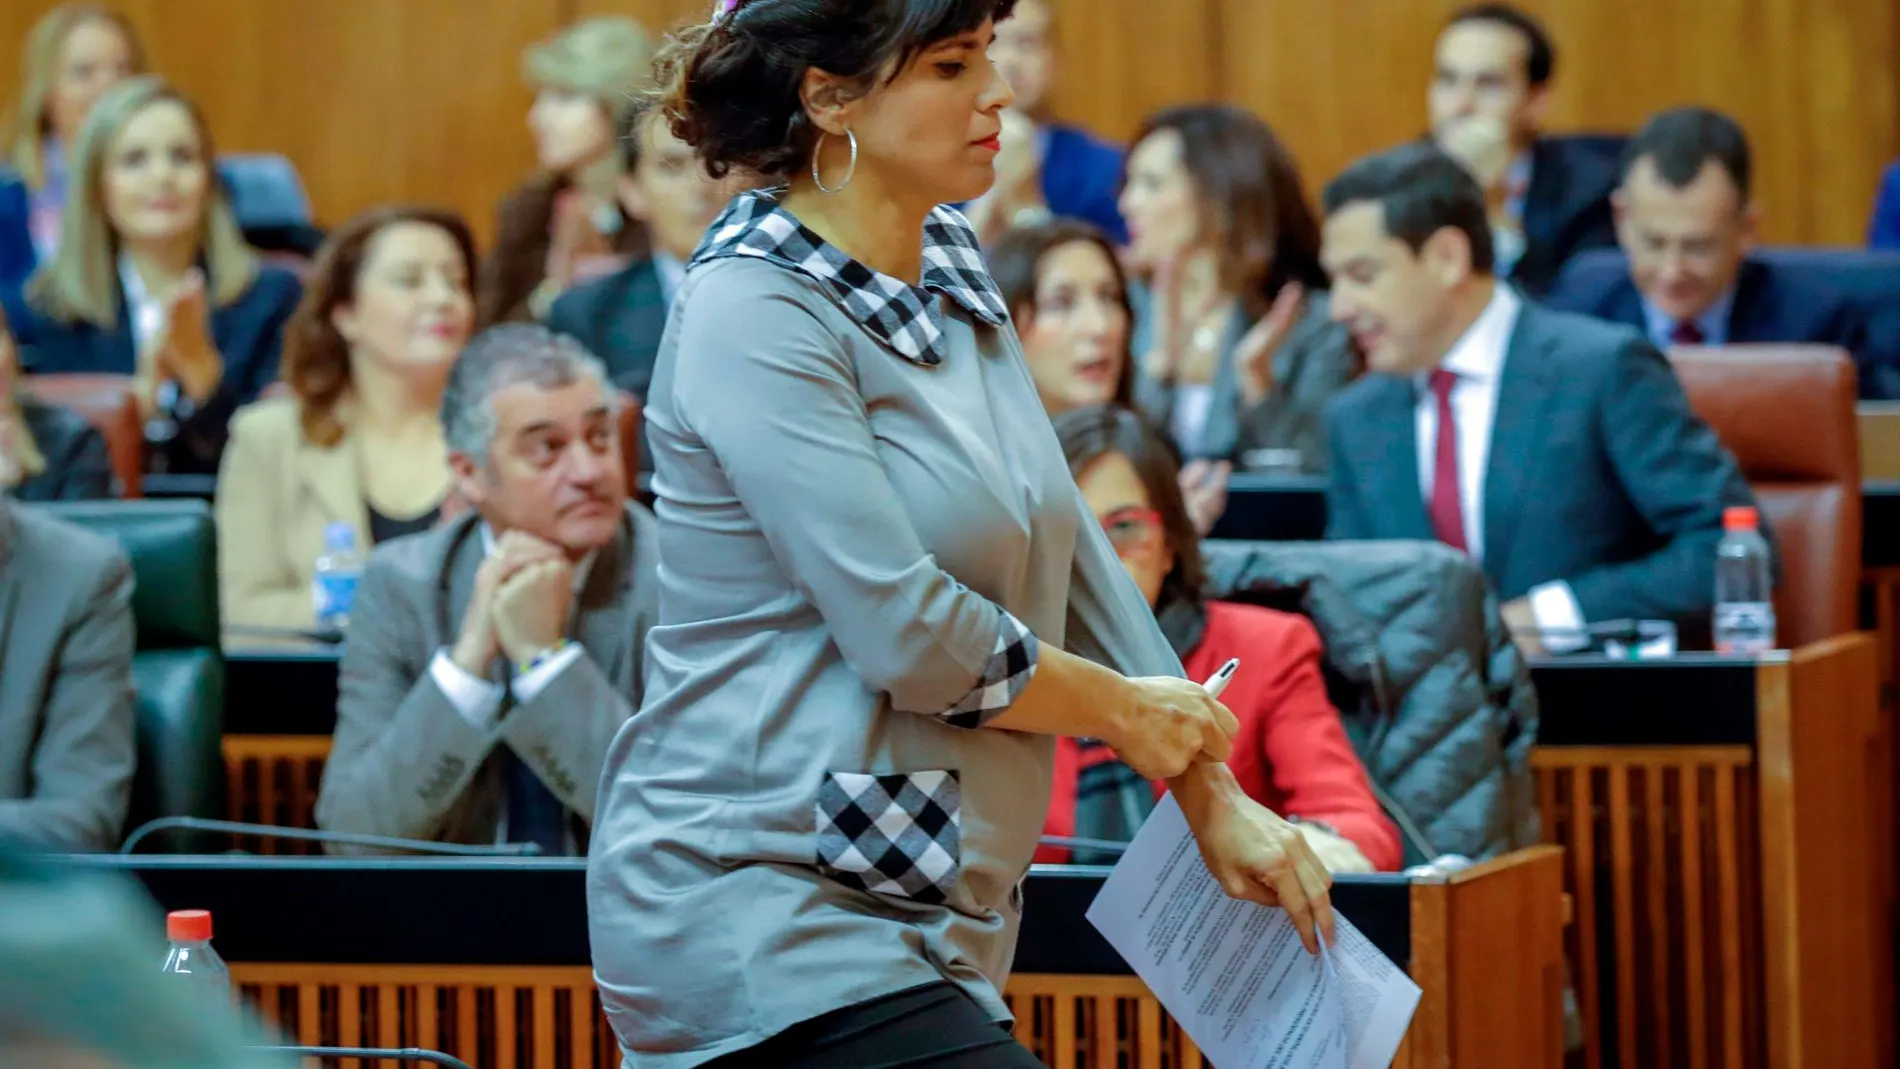 La portavoz de Adelante Andalucía, Teresa Rodríguez, momentos antes de una de sus intervención en el debate/Foto: Efe